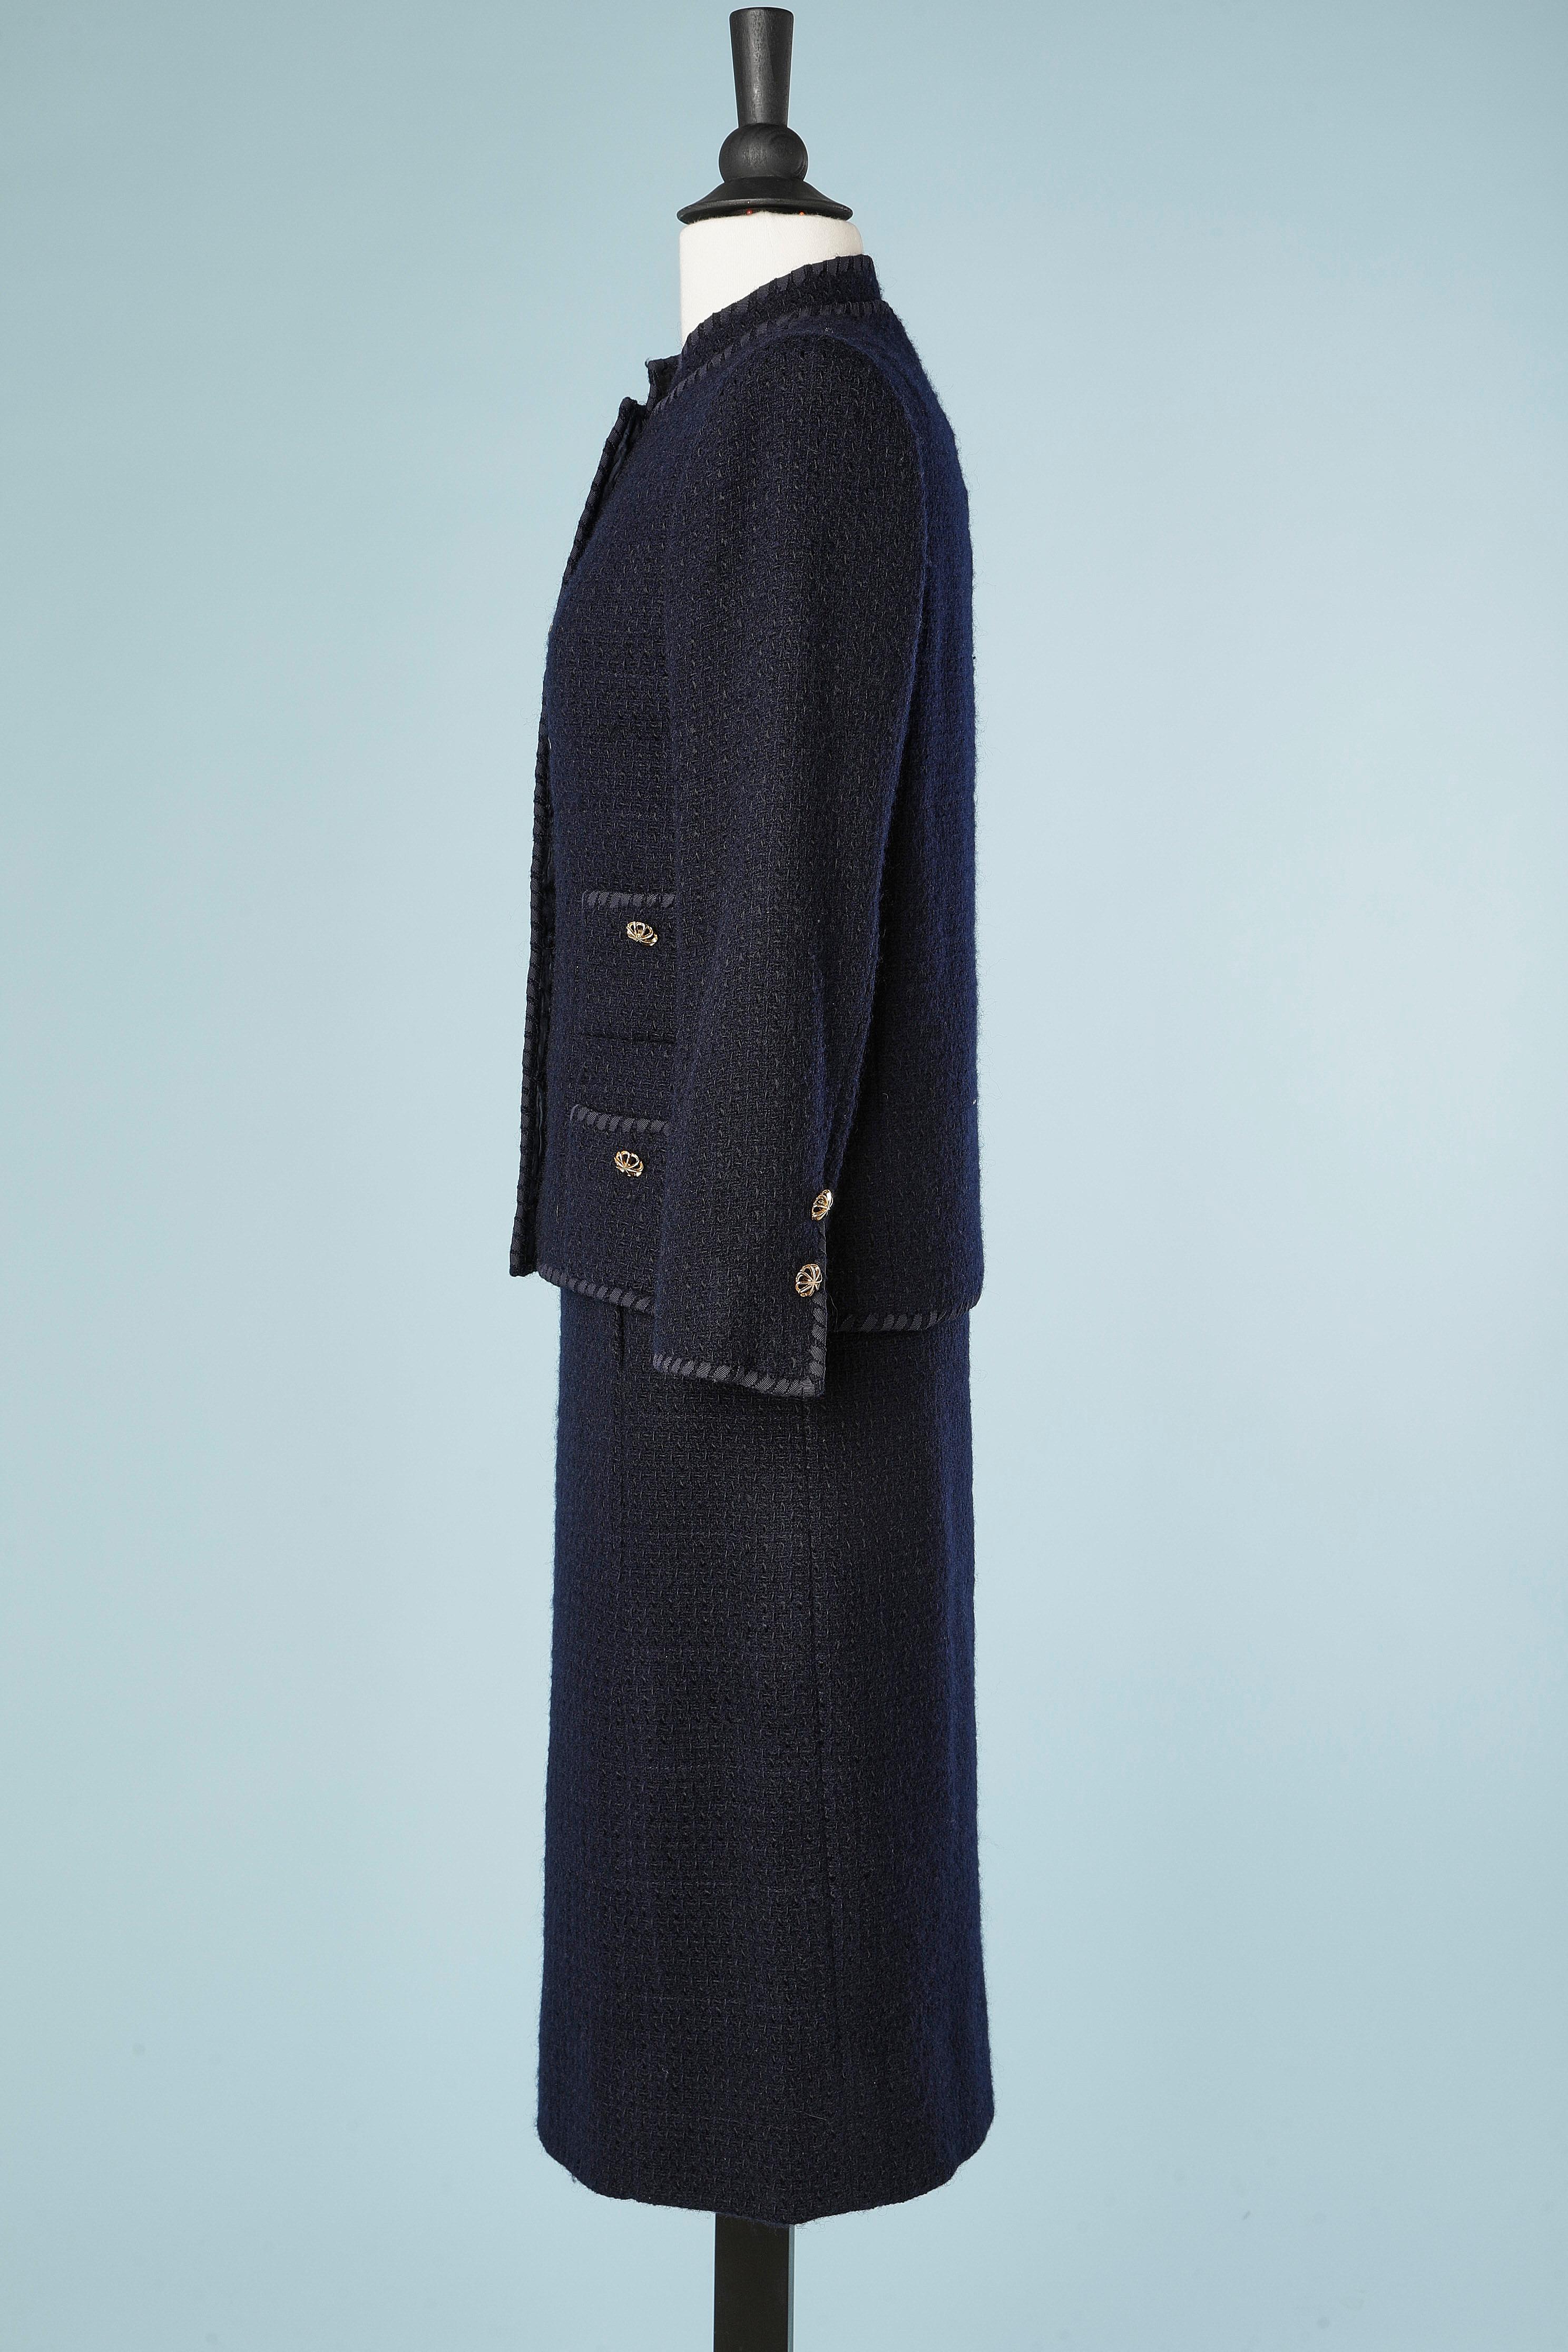 Women's Navy blue skirt-suit in wool tweed  France de Kergal Circa 1970's  For Sale